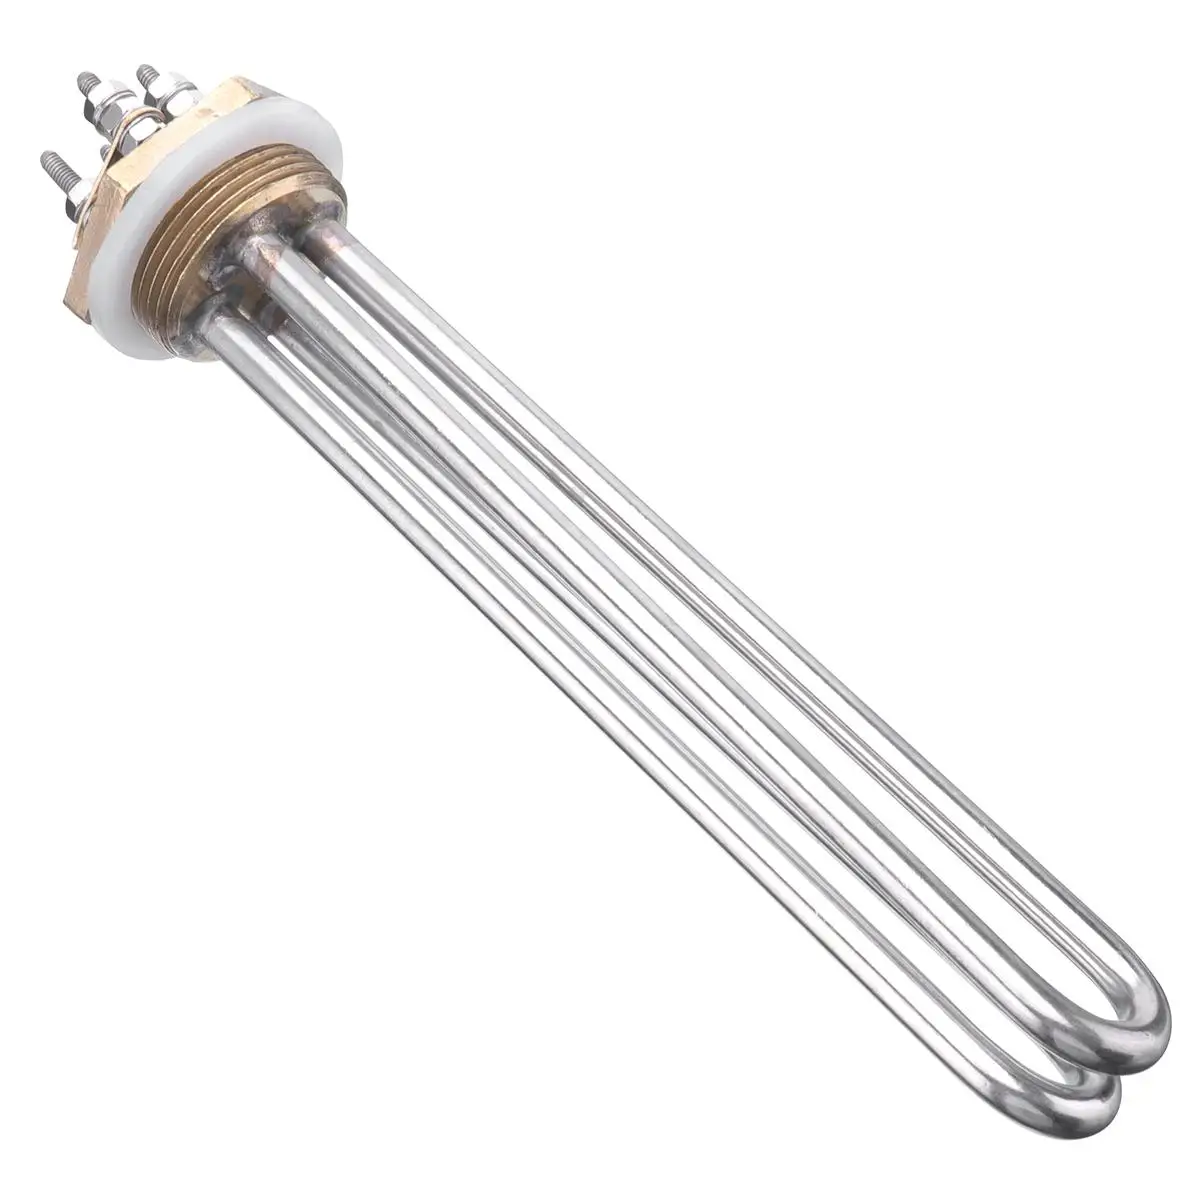 Tri-clamp 24 в 600 Вт водонагреватель Immesion водяной нагревательный элемент водонагревателя с бакелитовой защитной крышкой